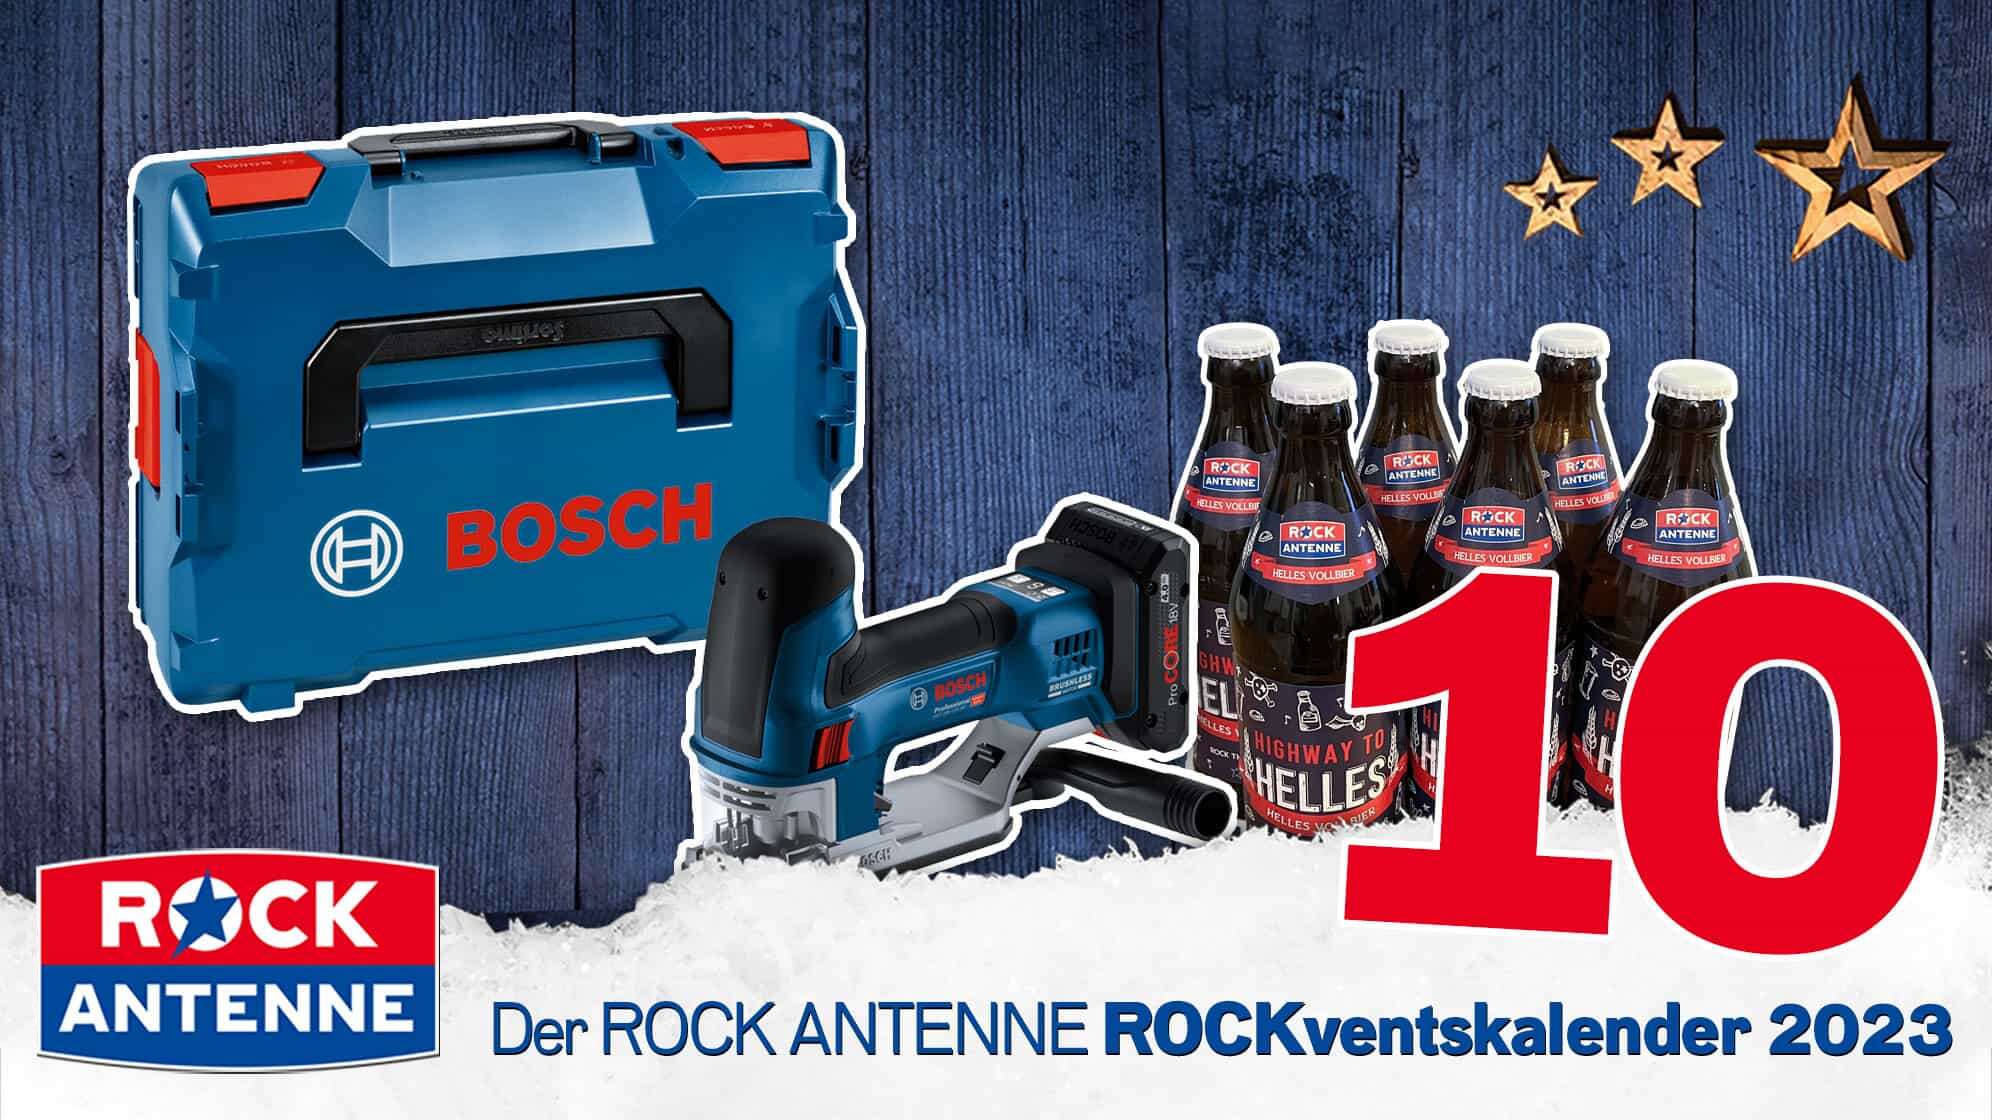 ROCK ANTENNE ROCKventskalender Türchen 10: BOSCH Professional Stichsäge Werkzeug Set mit ROCK ANTENNE Bier